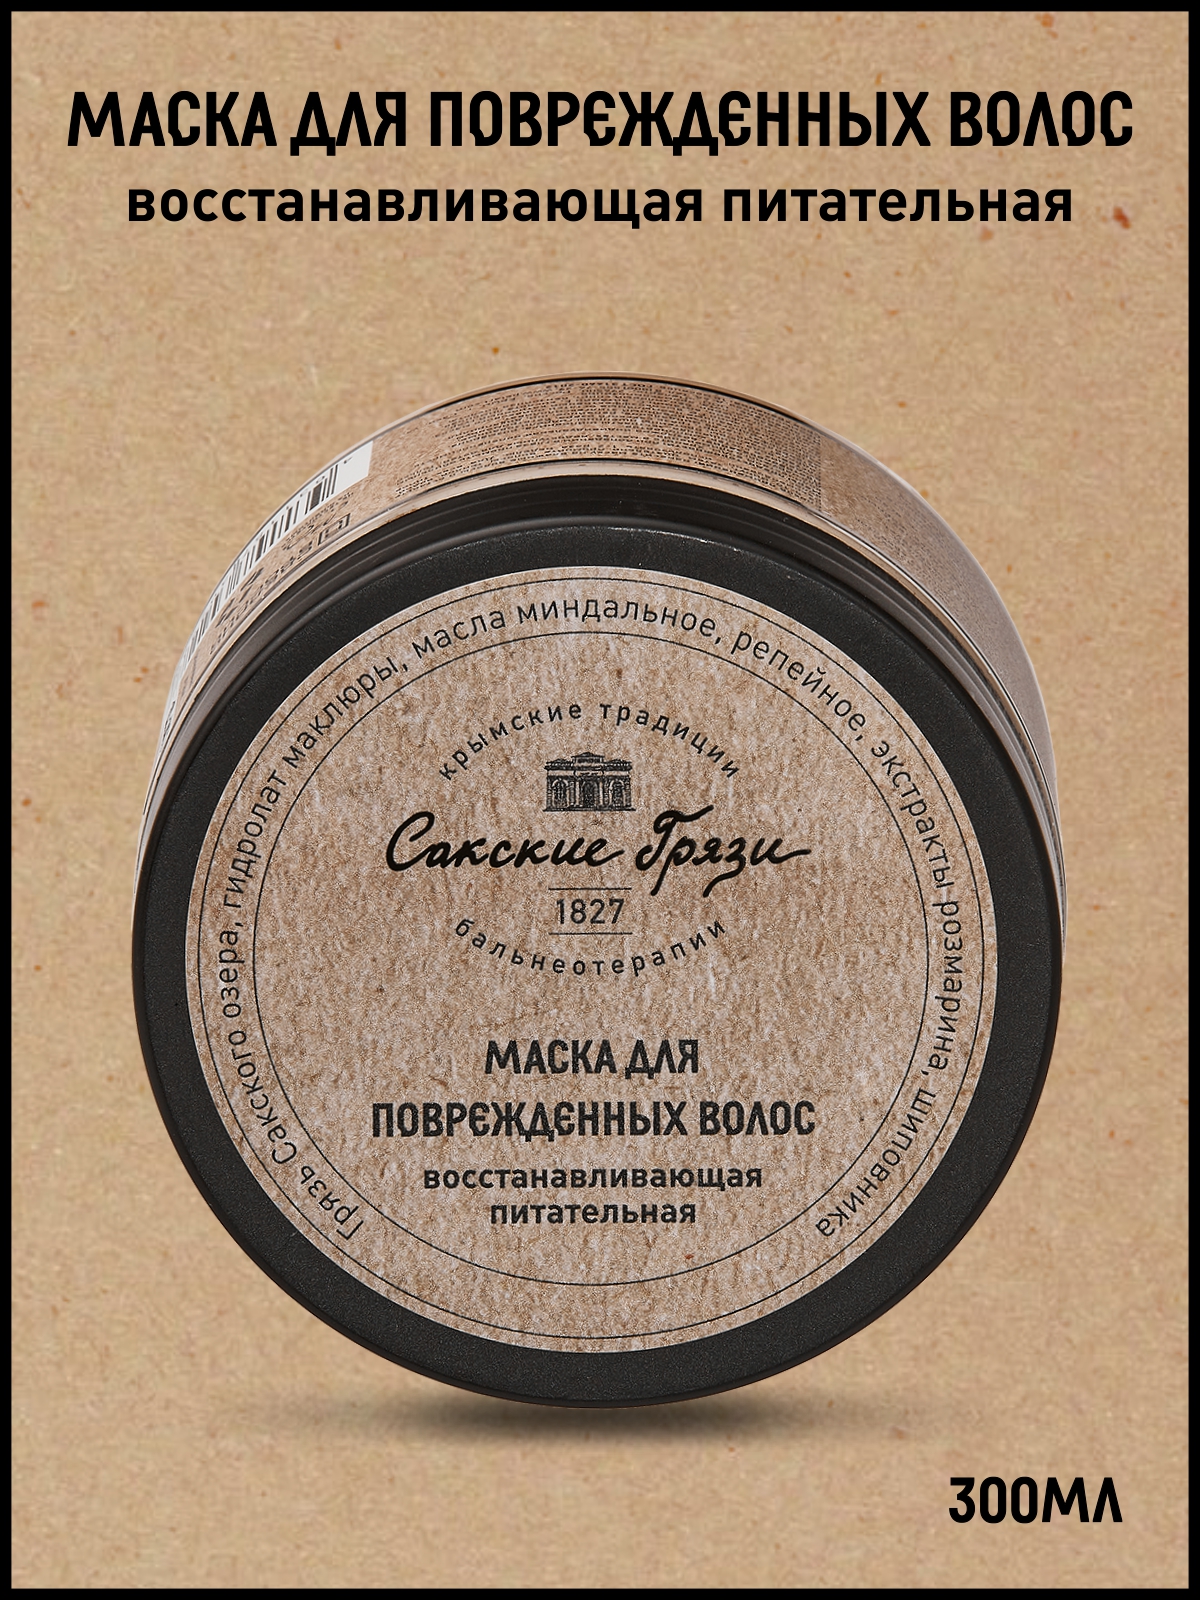 Маска для волос Крымские традиции бальнеотерапии Восстанавливающая Питательная 300мл грязь иловая сульфидная сакского озера 1700 гр